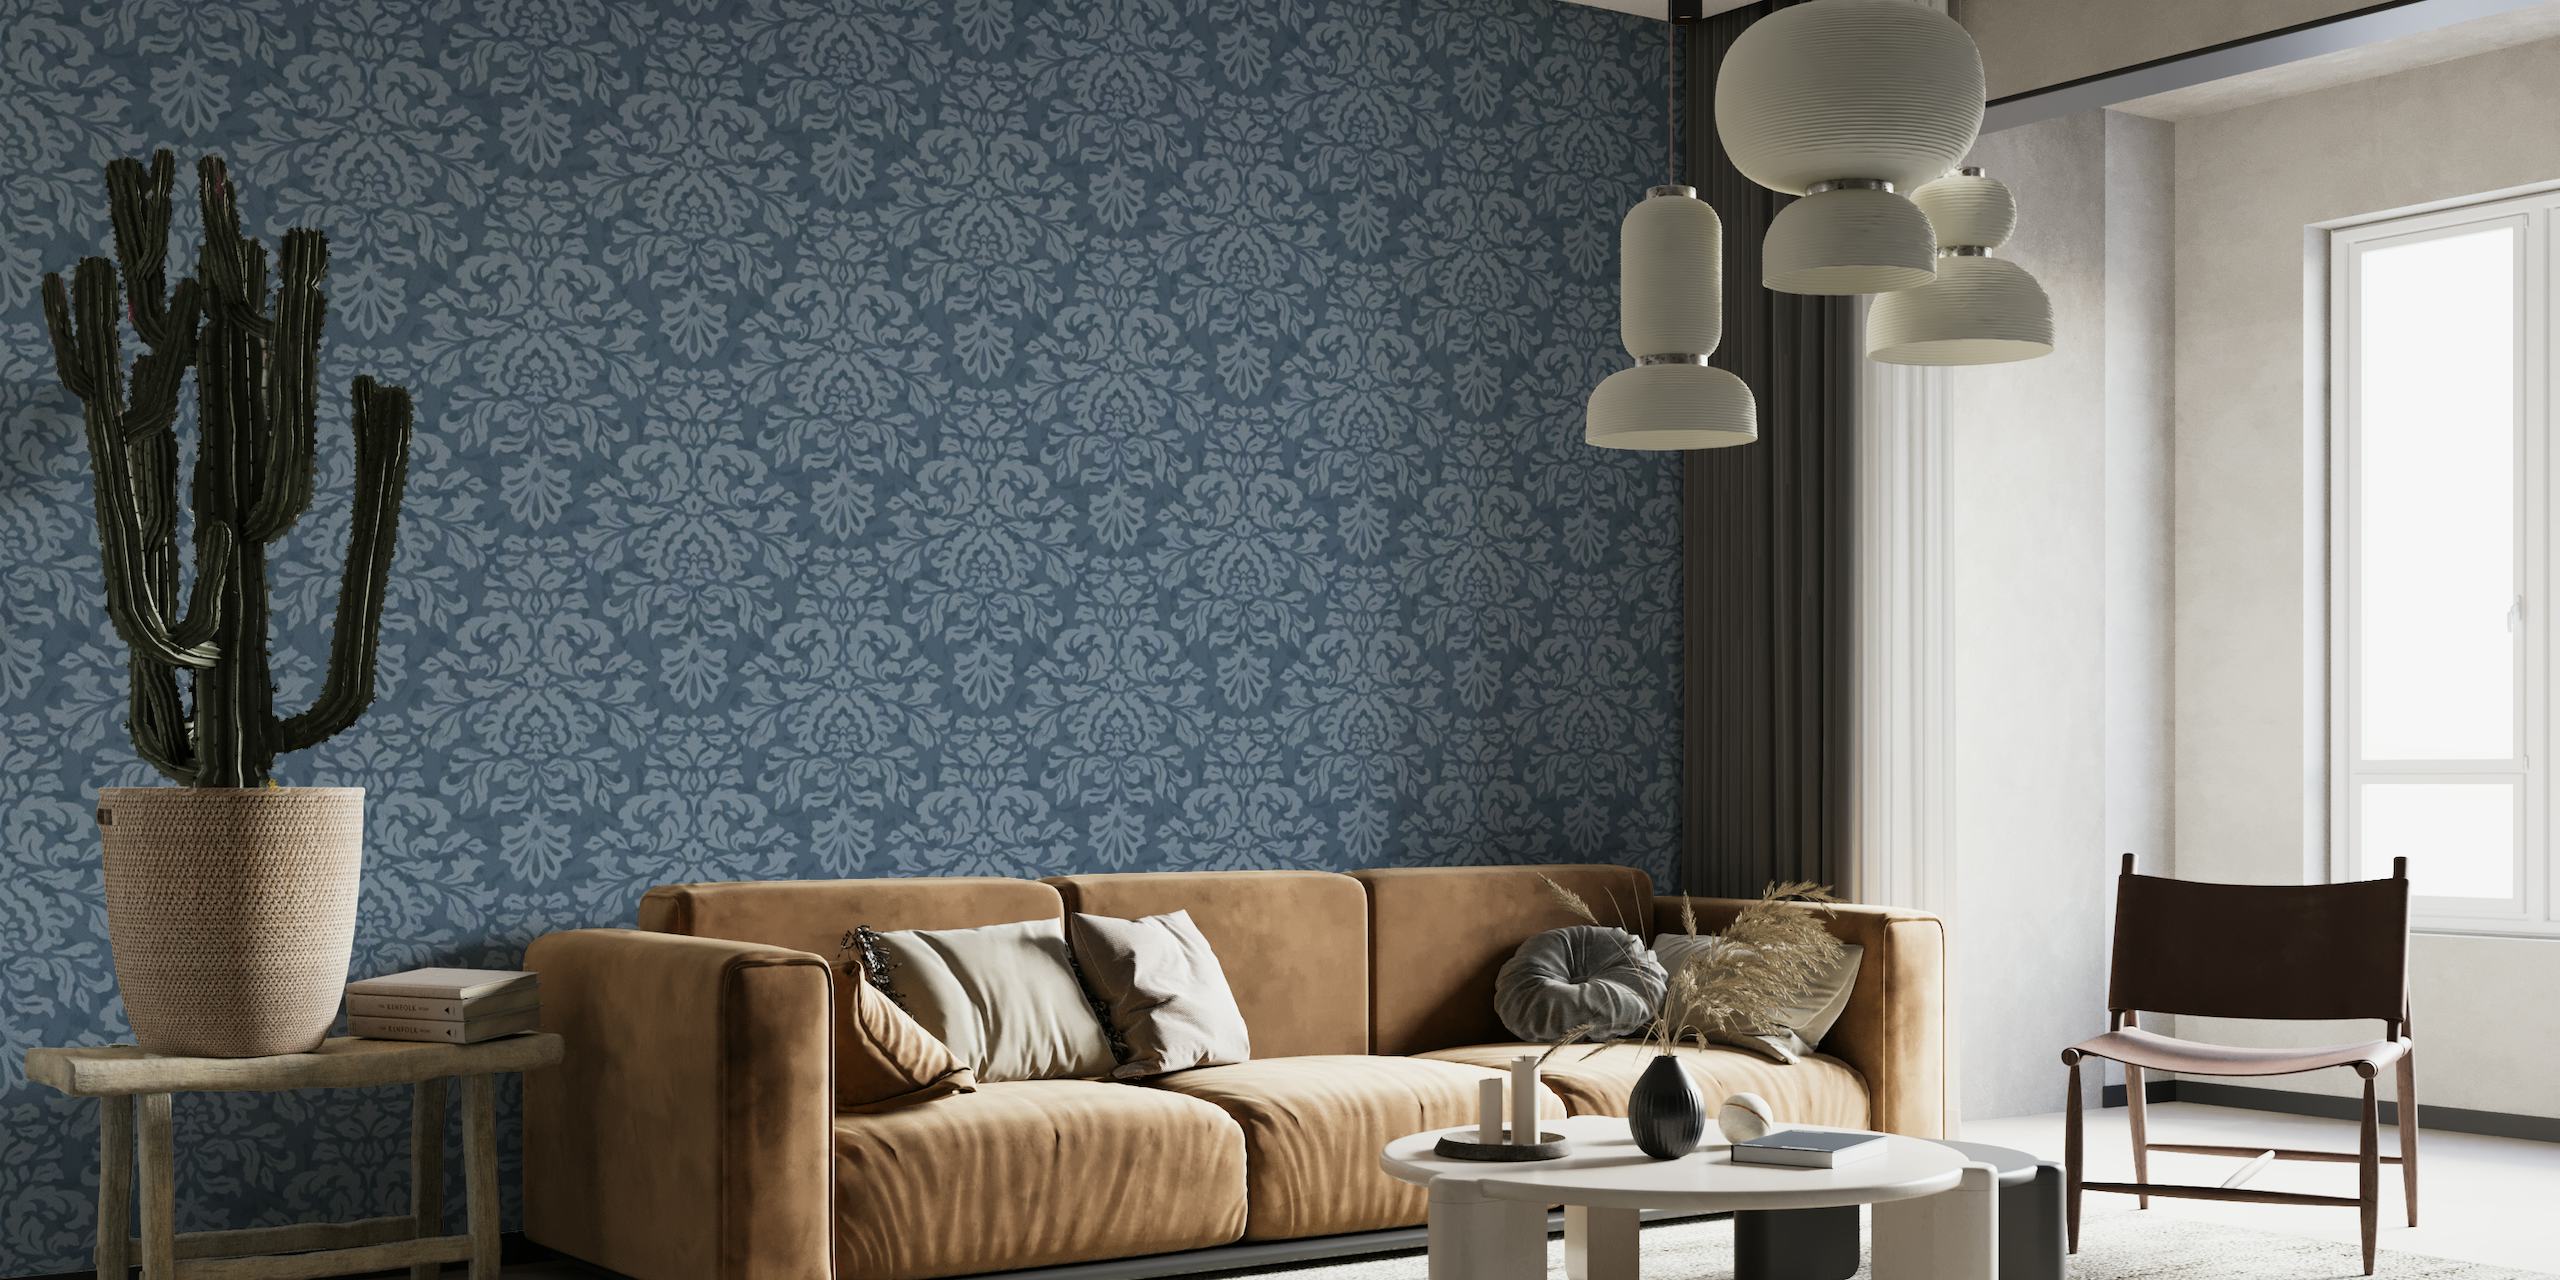 Klassieke muurschildering met blauw damastpatroon om elegantie aan uw ruimte toe te voegen